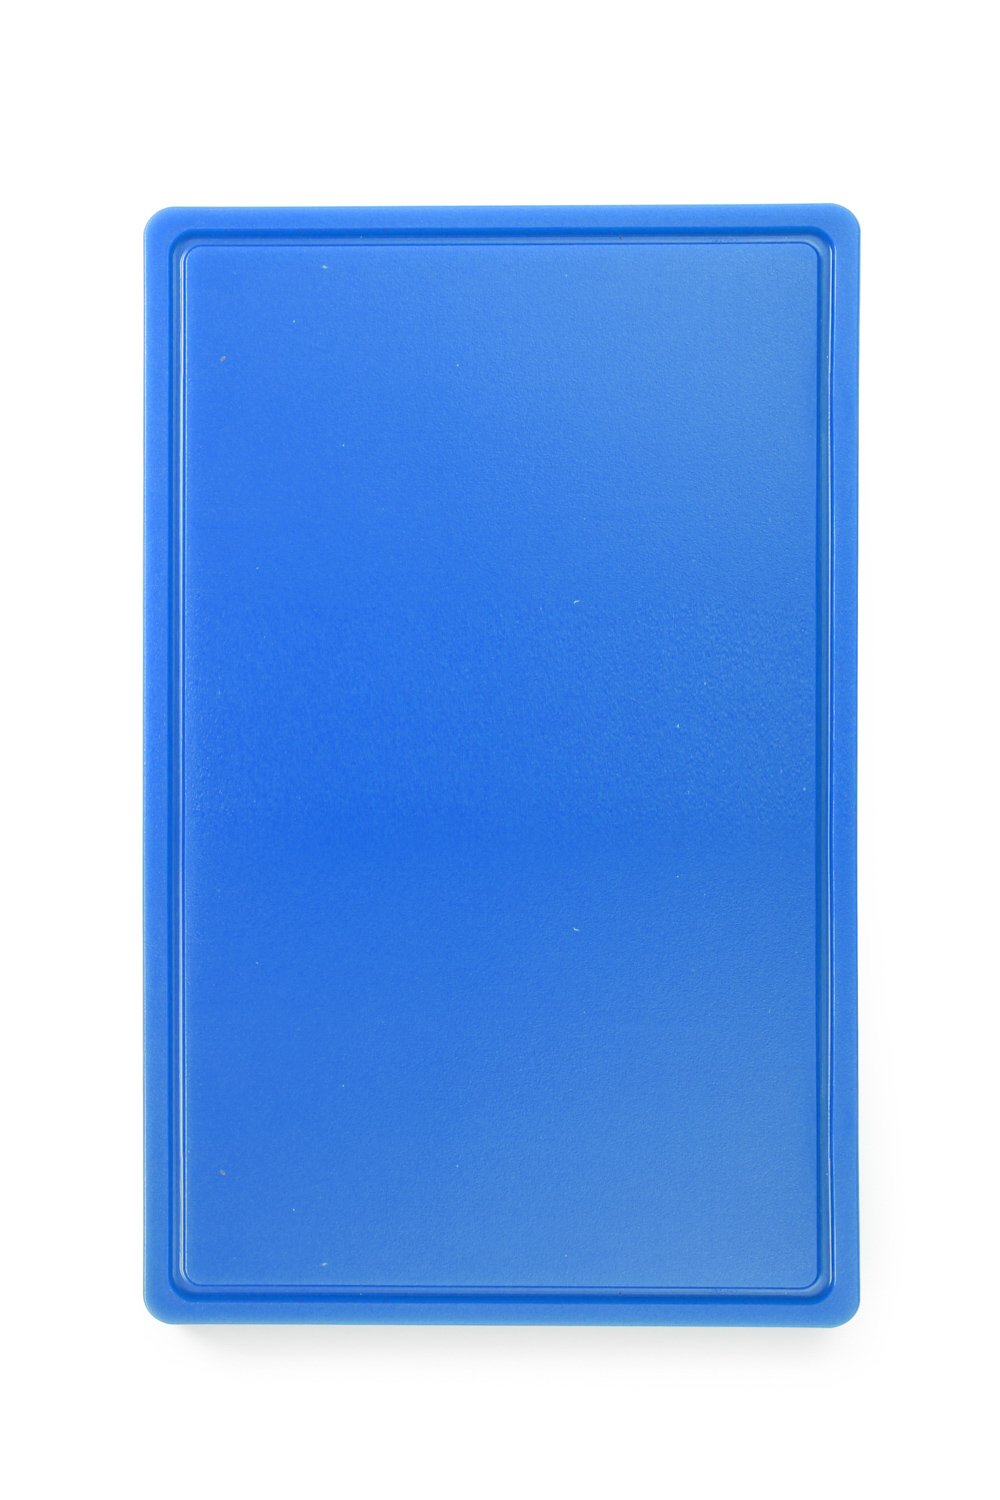 HENDI Schneidbretter HACCP Gastronorm 1/1 - für Fisch - Farbe: blau 530x325x(H)15 mm